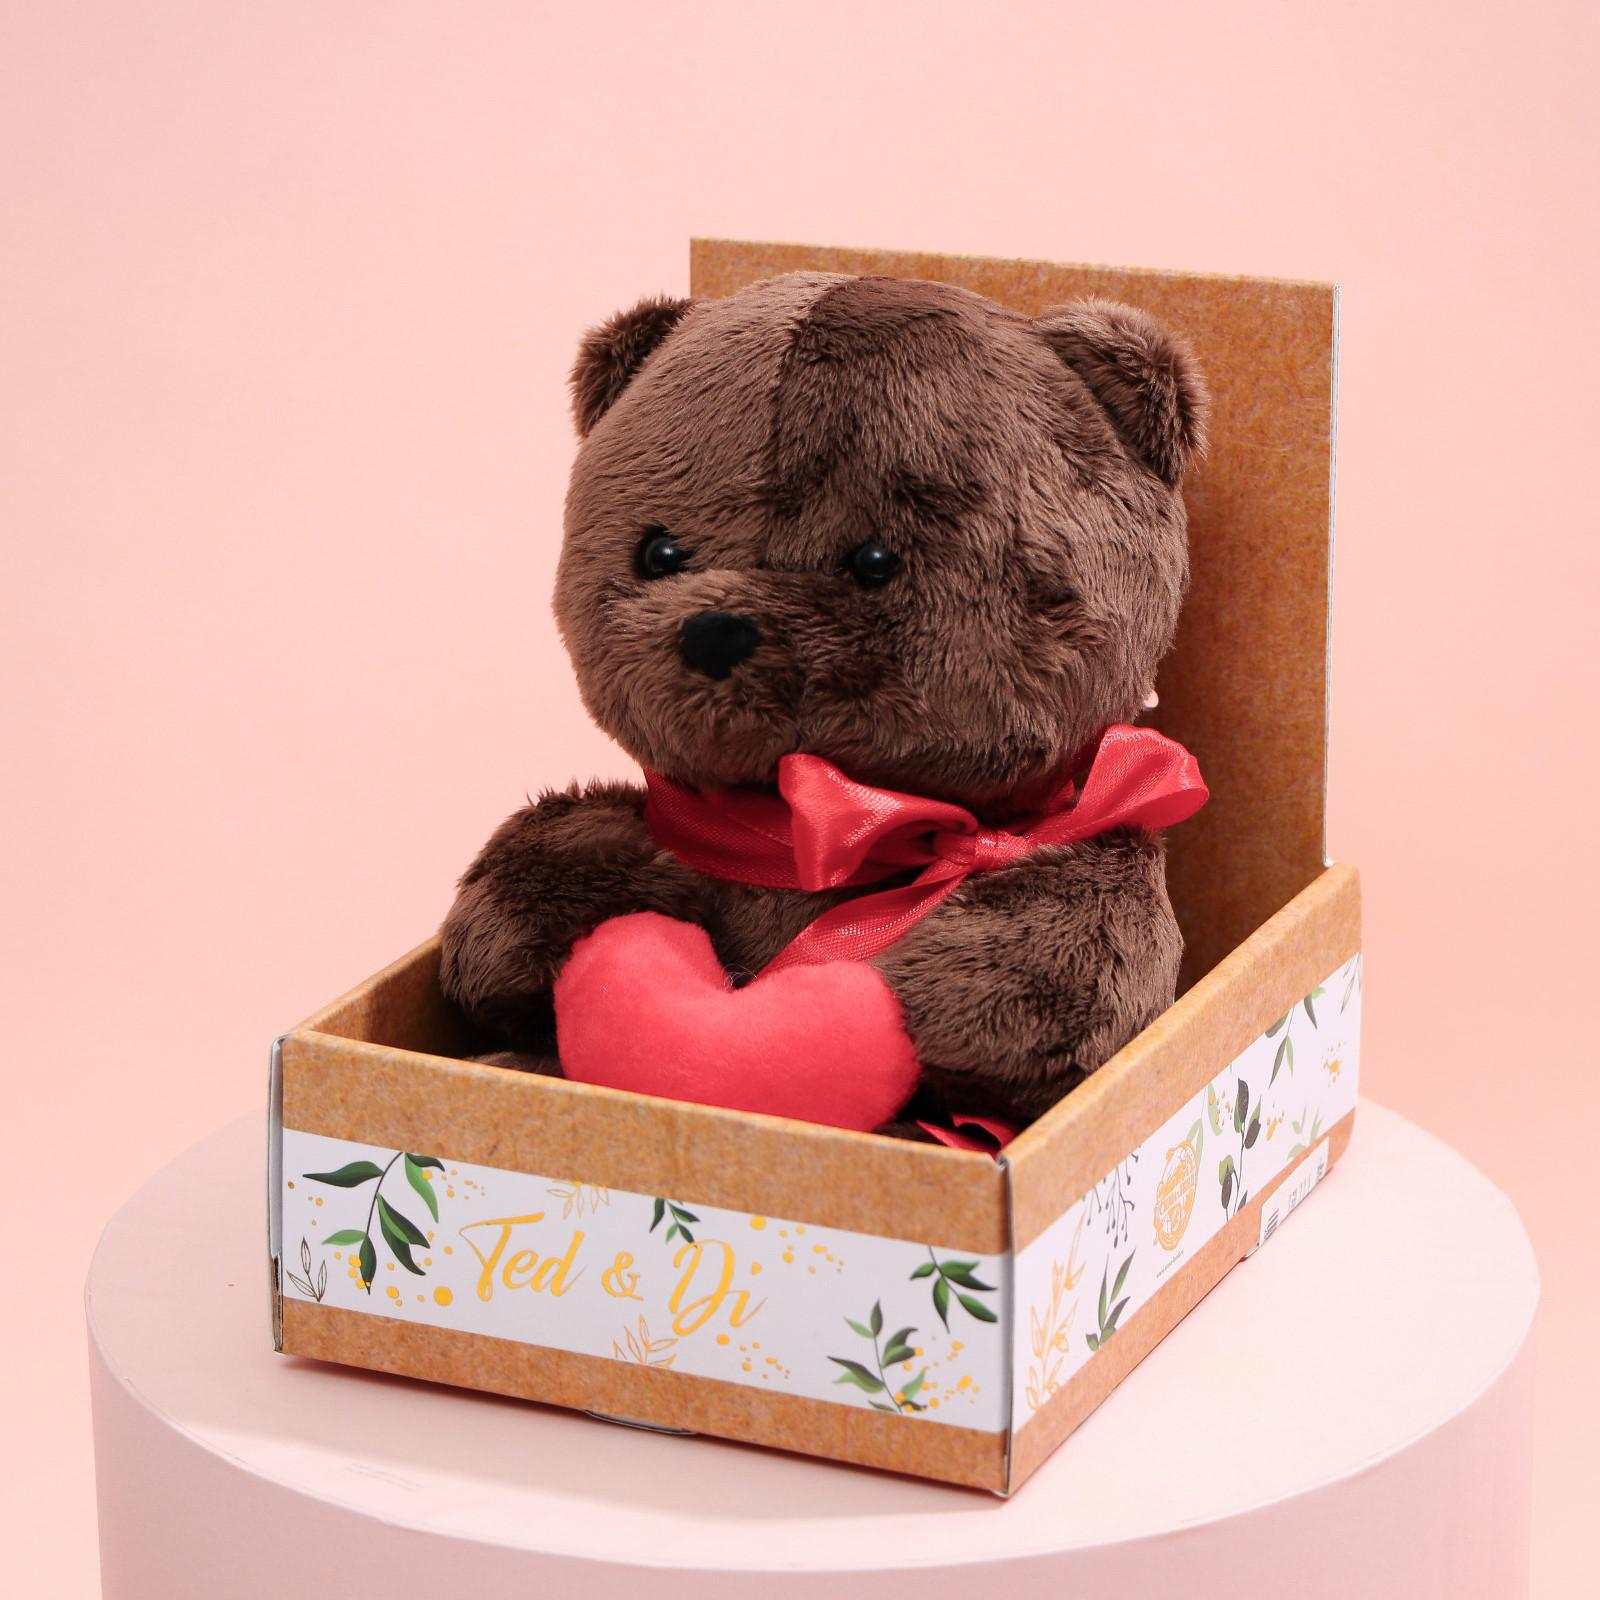 Мягкая игрушка Milo Toys Ted с сердечком мишка 25 см - фото 4